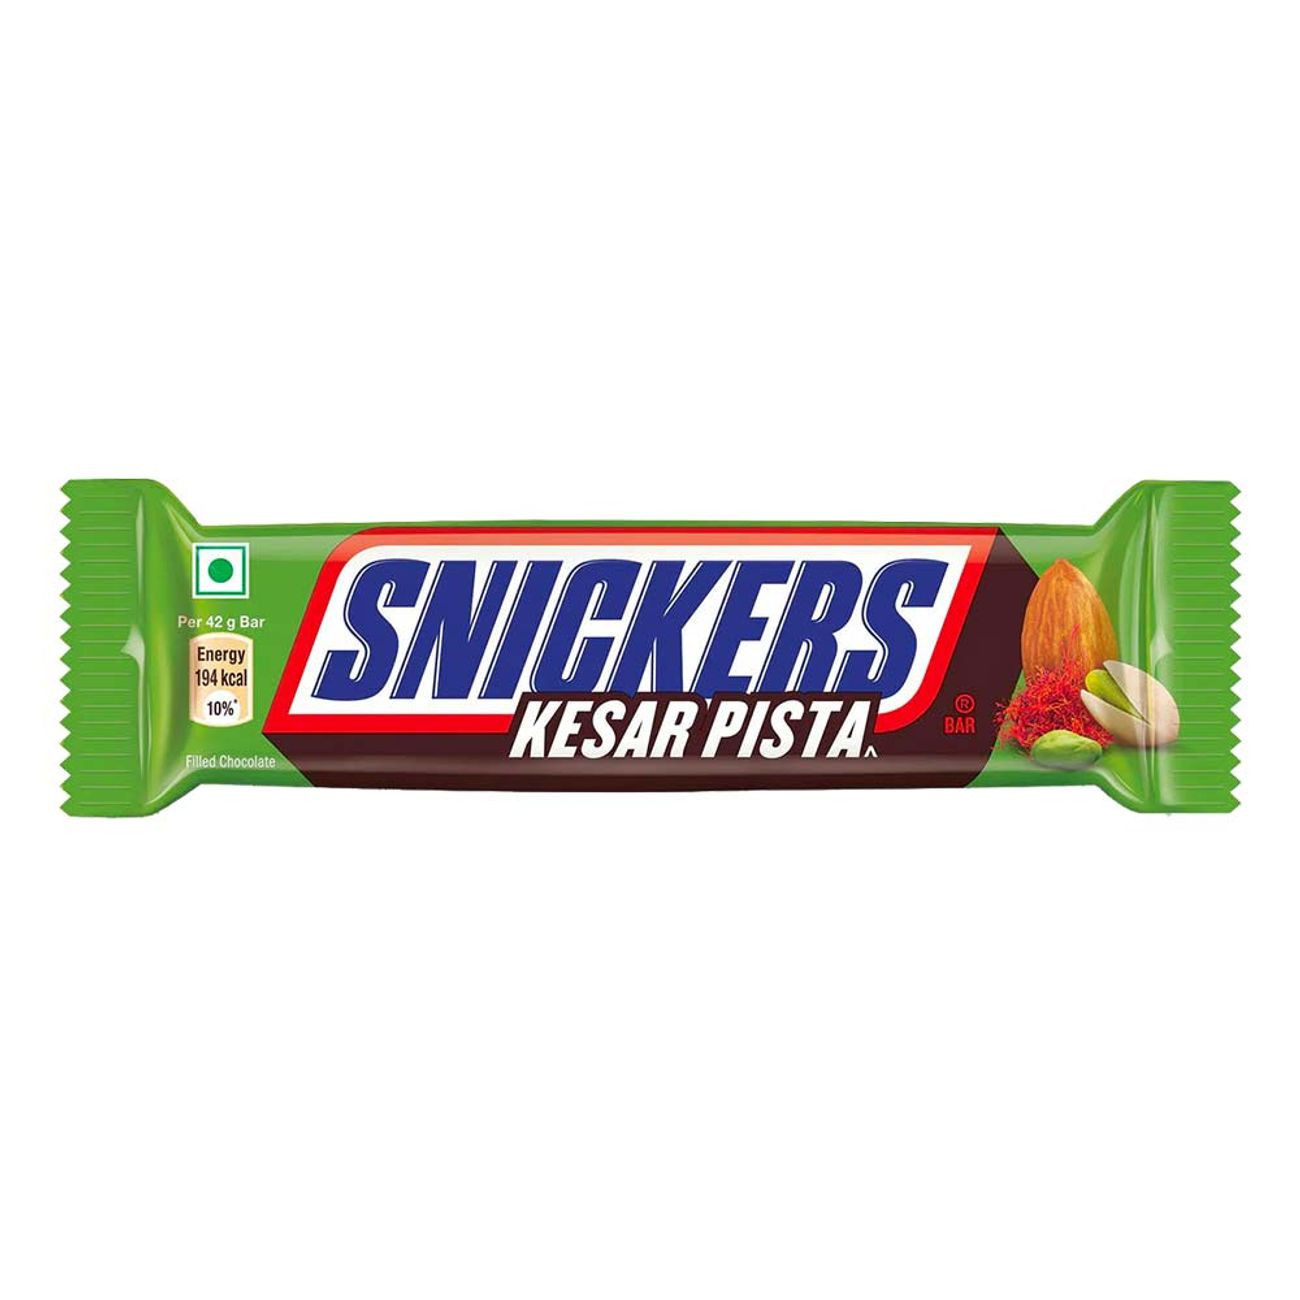 snickers-kesar-pista-97999-1